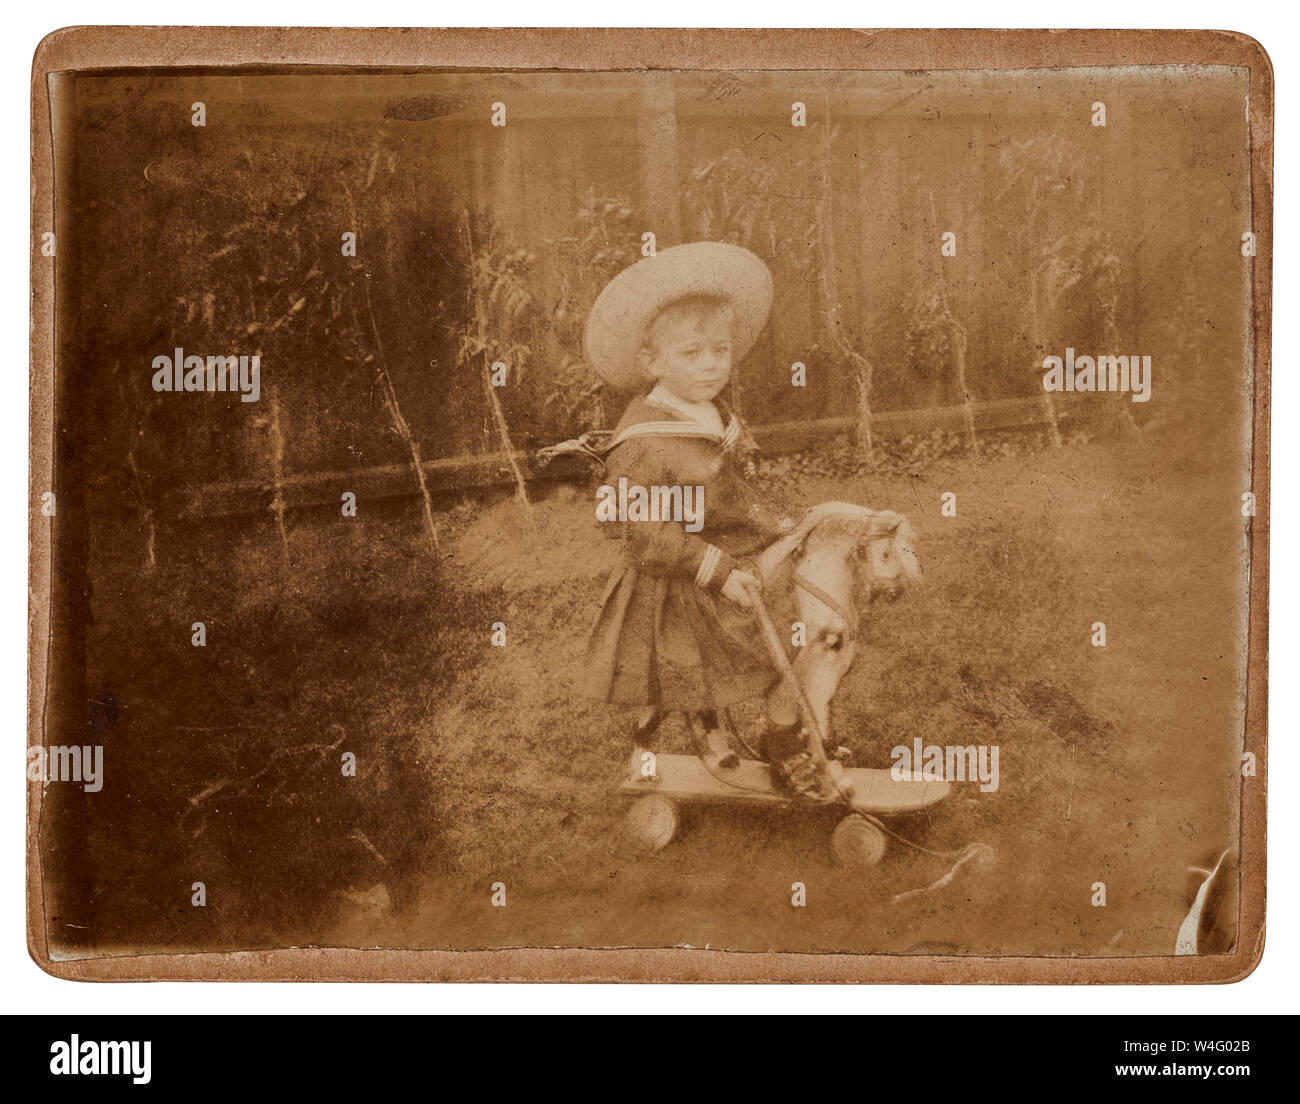 Jeune garçon assis sur un cheval jouet vêtu d'un costume de marin et portant un chapeau à partir d'une photographie de style édouardien Banque D'Images